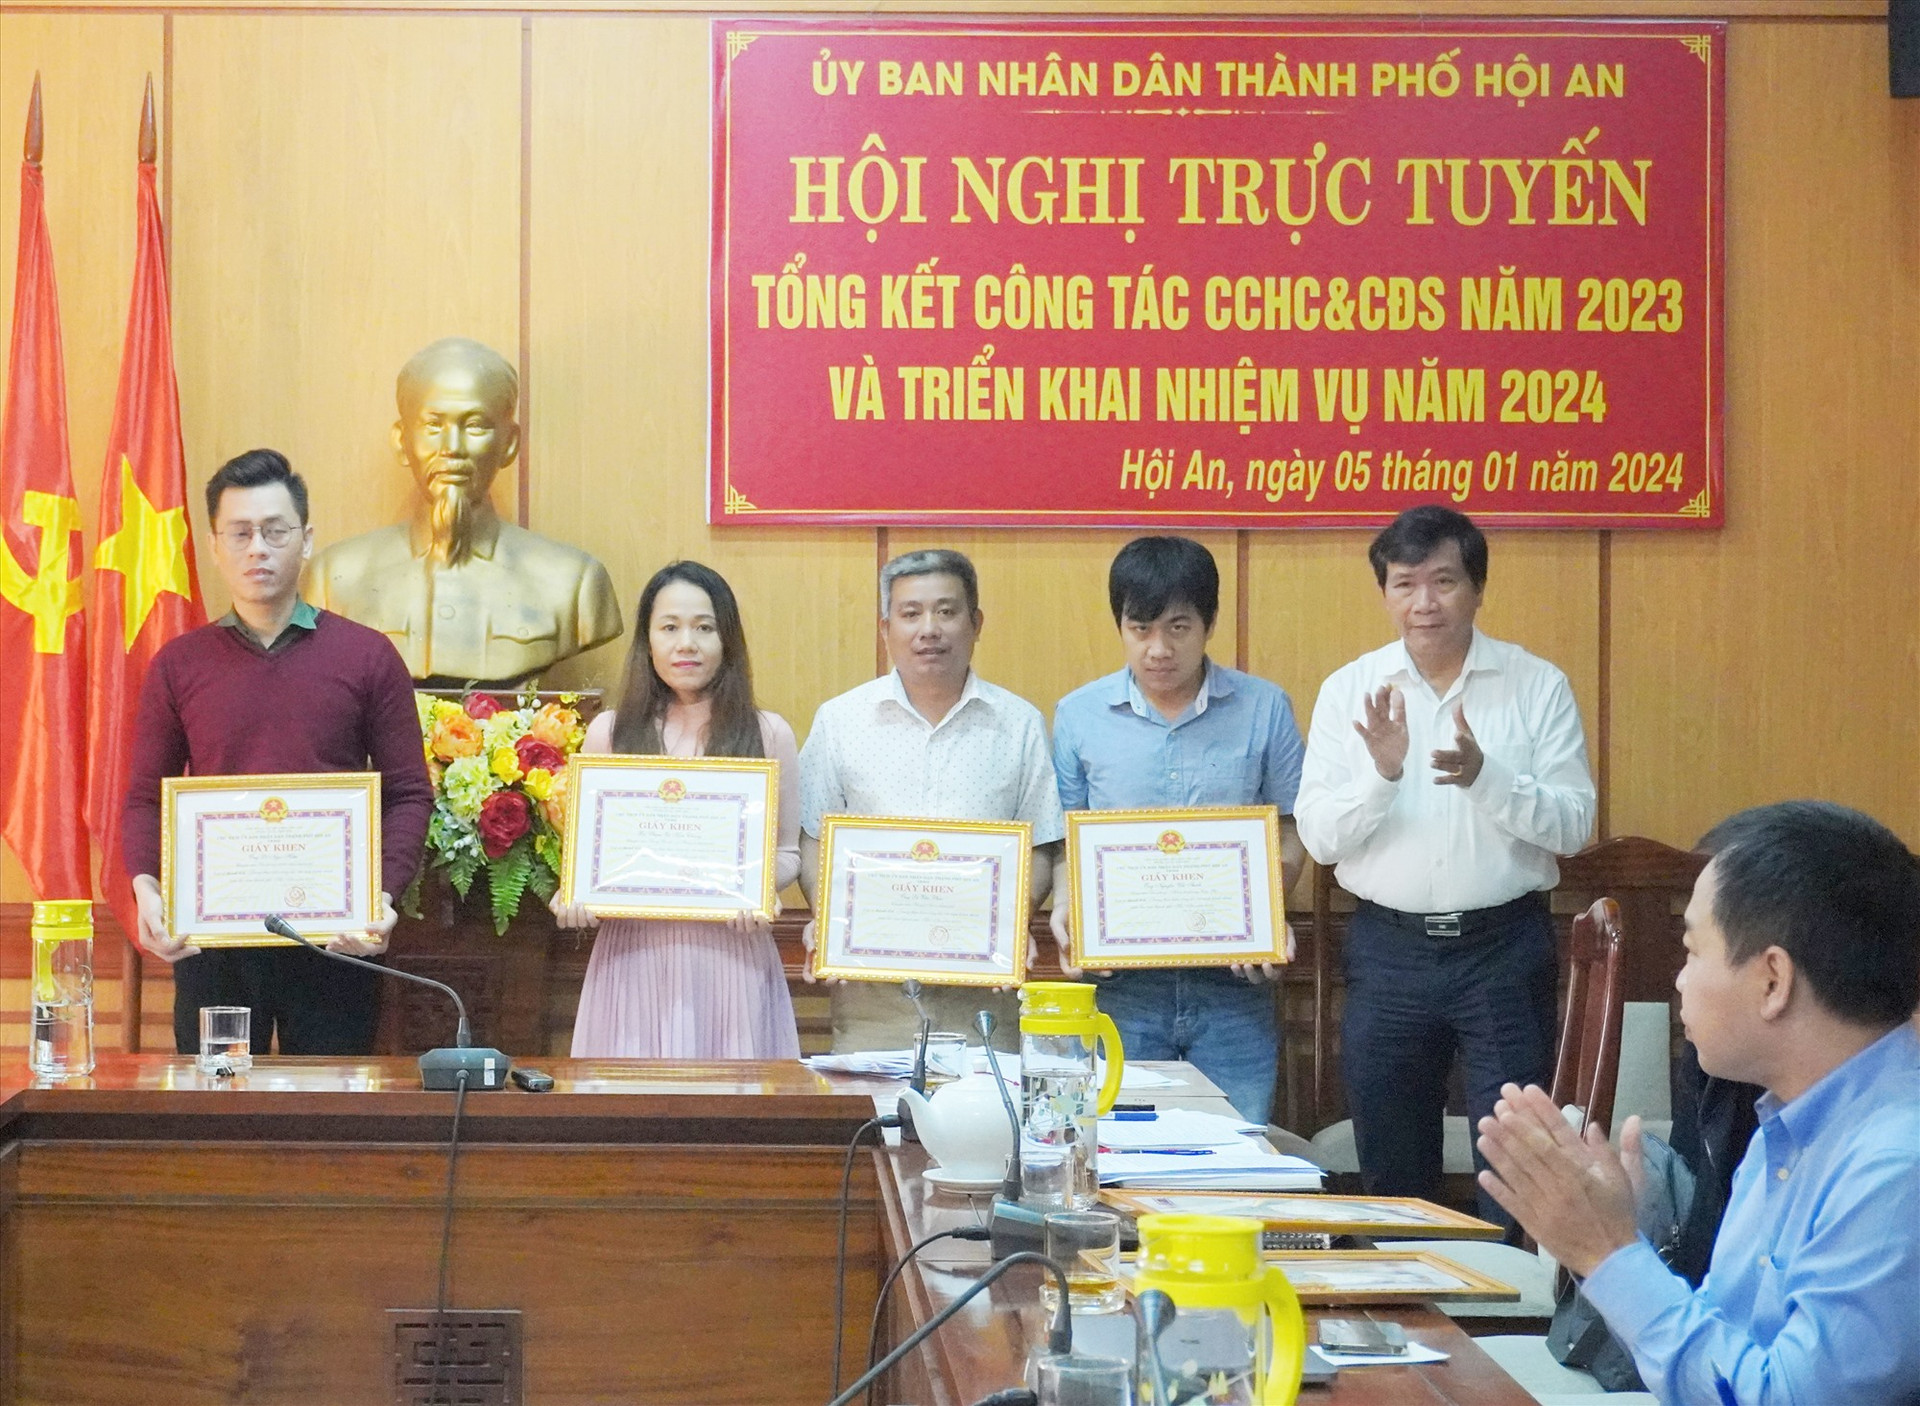 UBND TP.Hội An khen thưởng các tập thể và các nhân có thành tích trong thực hiện công tác CCHC năm 2023. Ảnh: Phan Sơn.